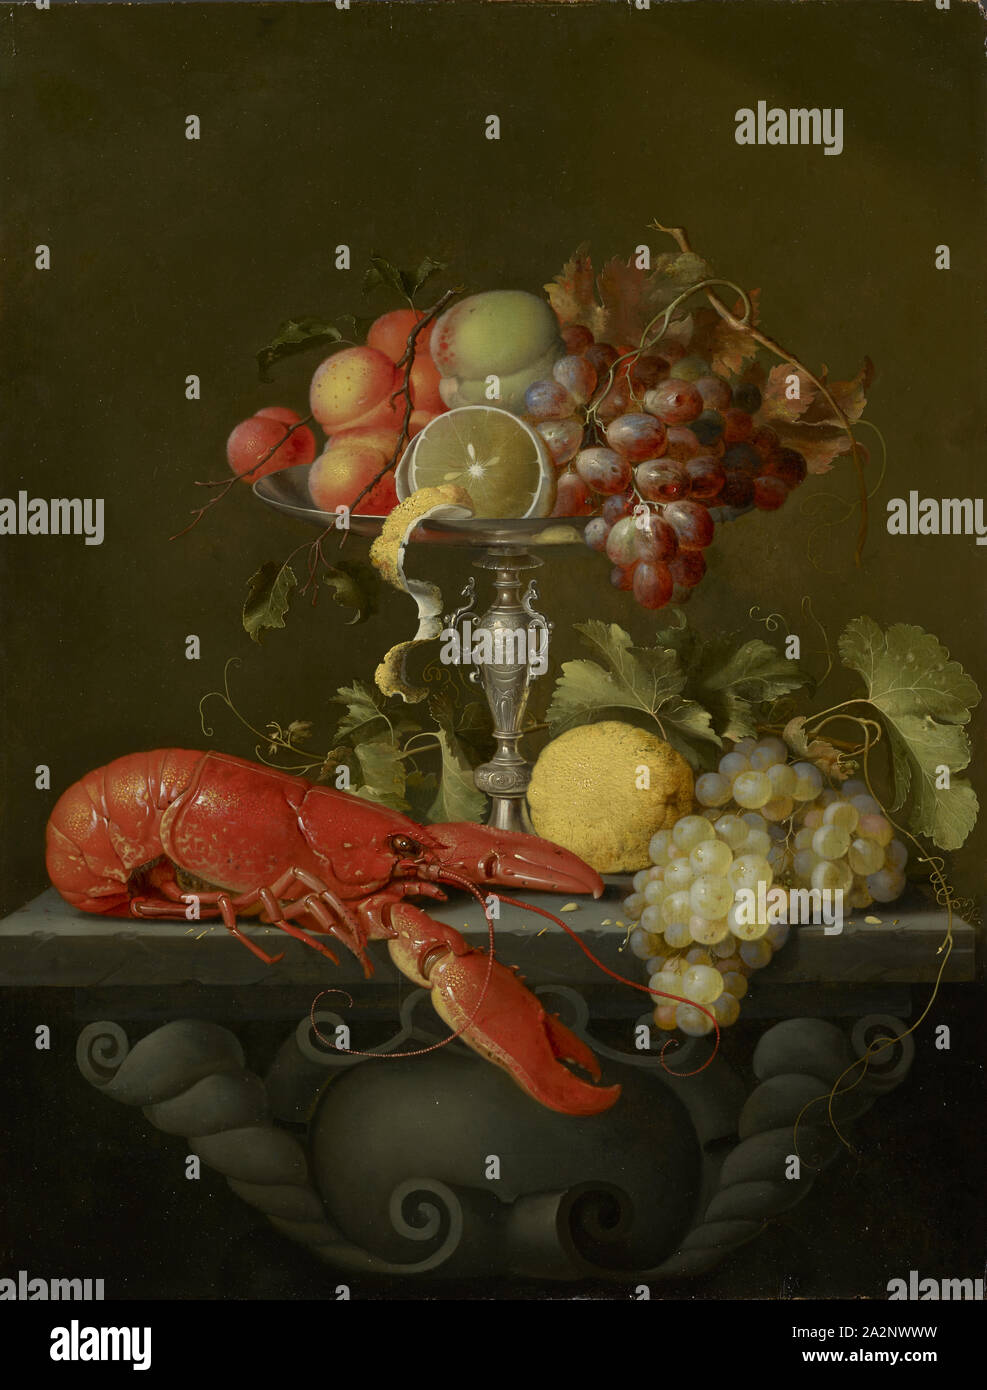 Stillleben mit Früchten und Hummer, Öl auf Eichenholz, 64,5 x 49,5 cm, Nicht angegeben, Jan Davidsz. de Heem, (Nachahmer/Nachahmer), Utrecht 1606 - 1683/1684 Antwerpen Stockfoto